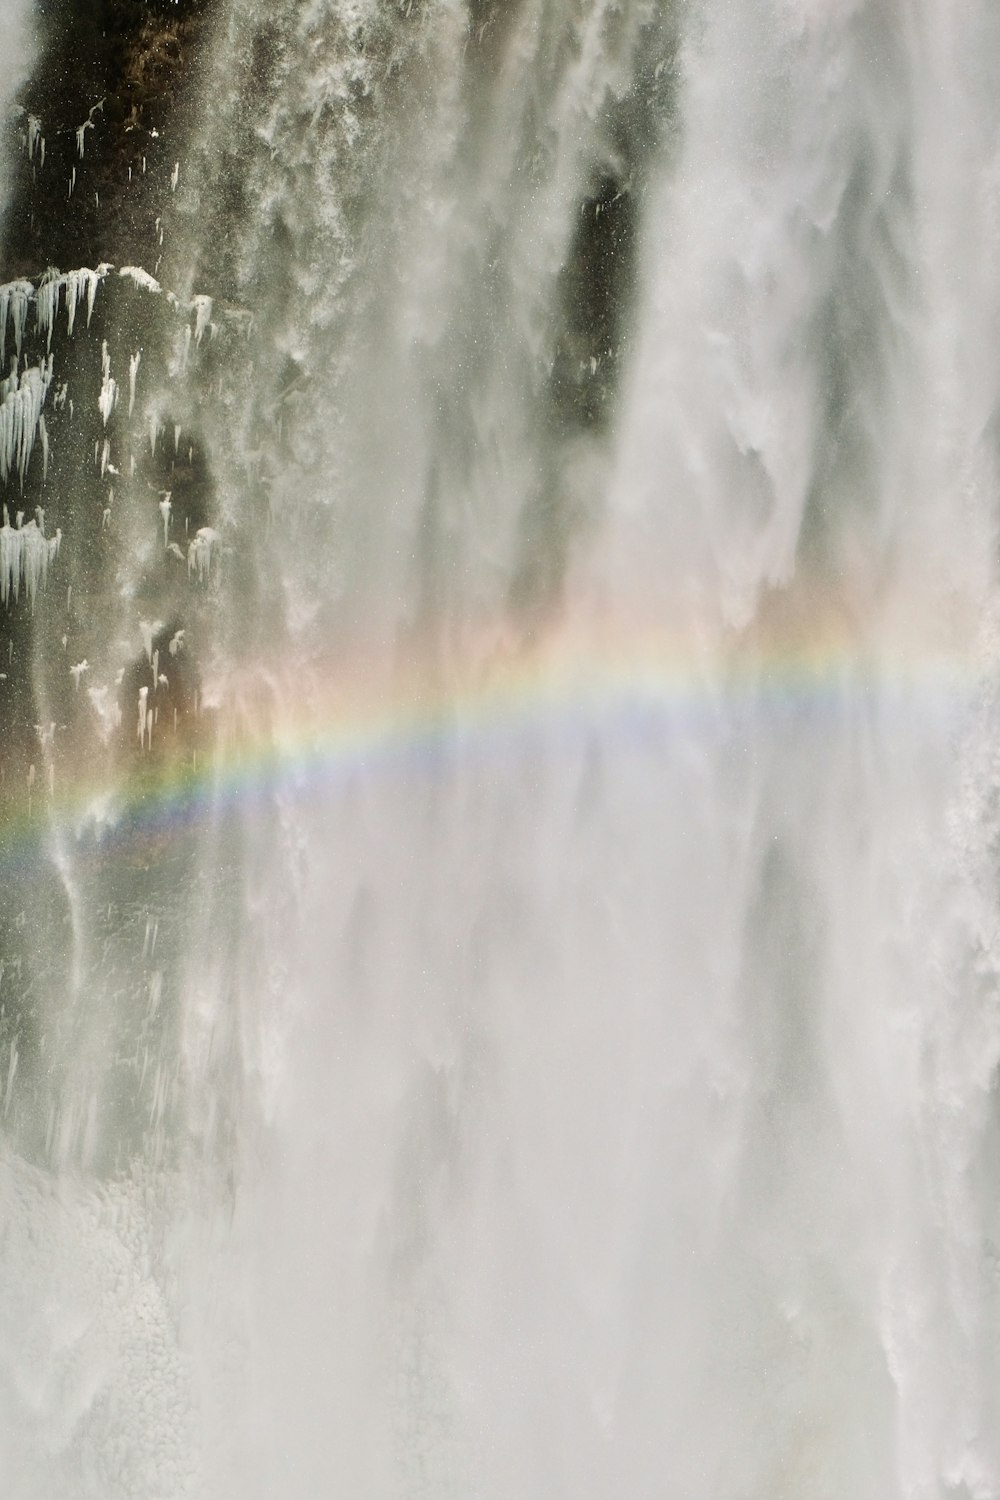 Un arcobaleno nel mezzo di una cascata